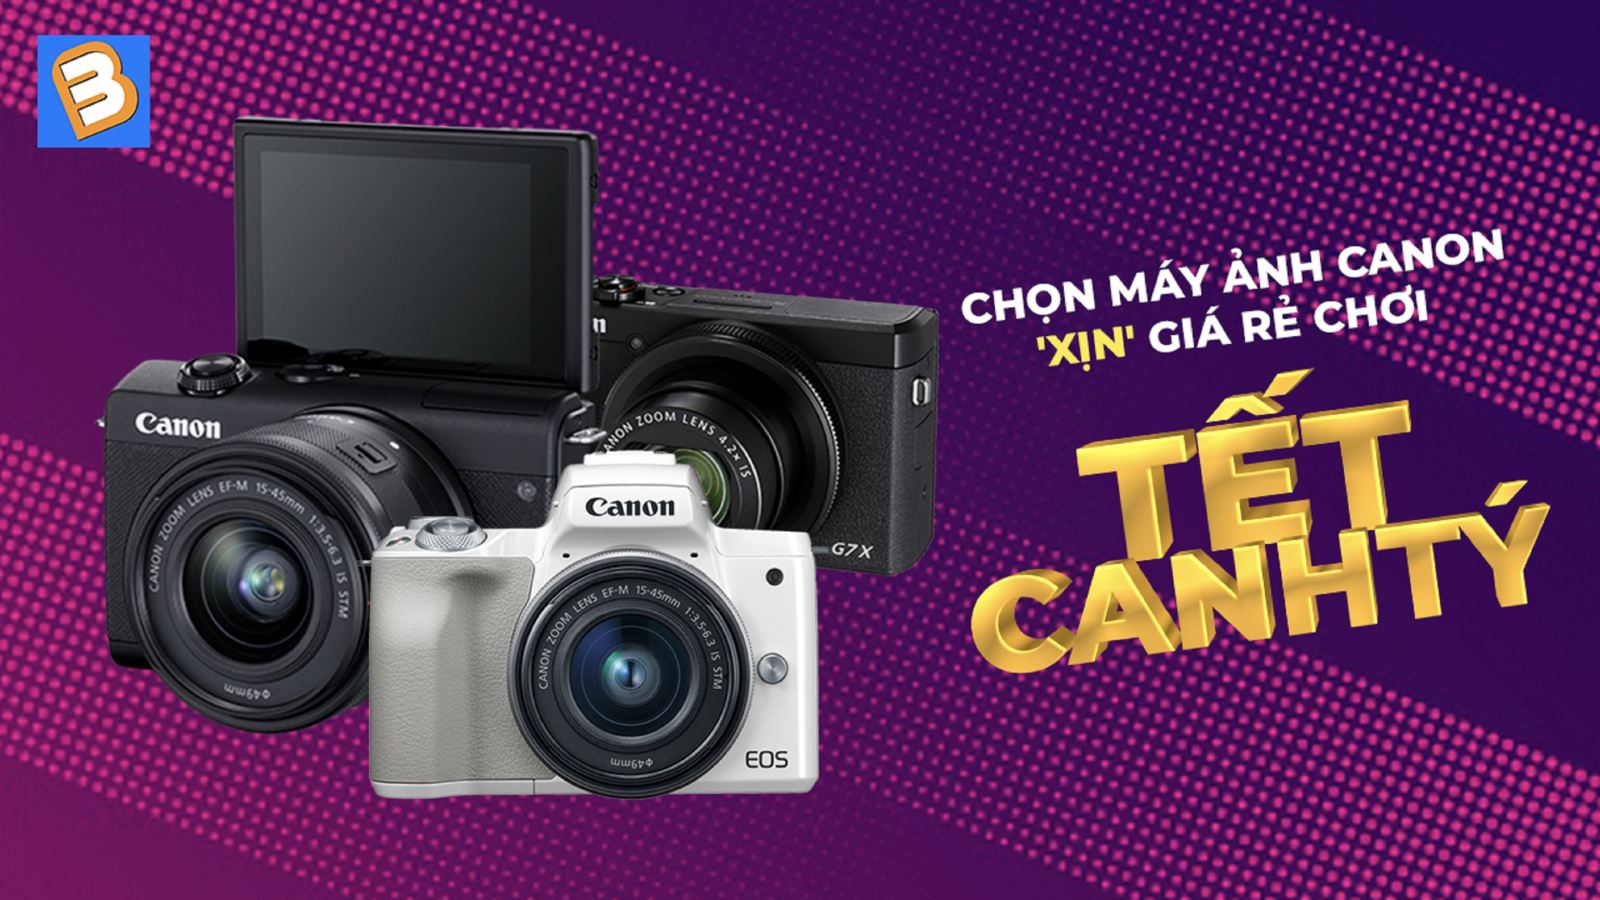 Chọn máy ảnh Canon 'xịn' giá rẻ chơi Tết Canh Tý 2020